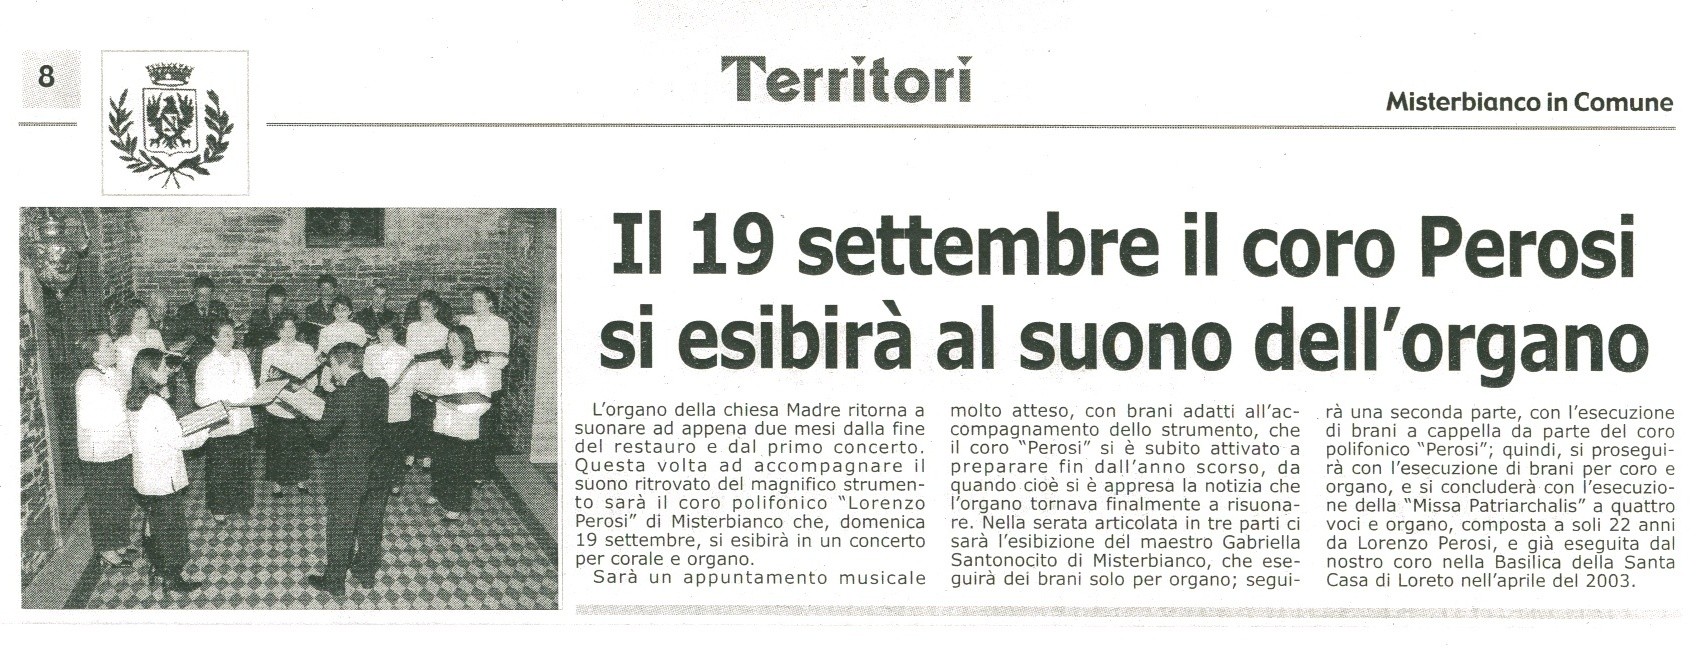 Misterbianco in Comune - settembre 2004